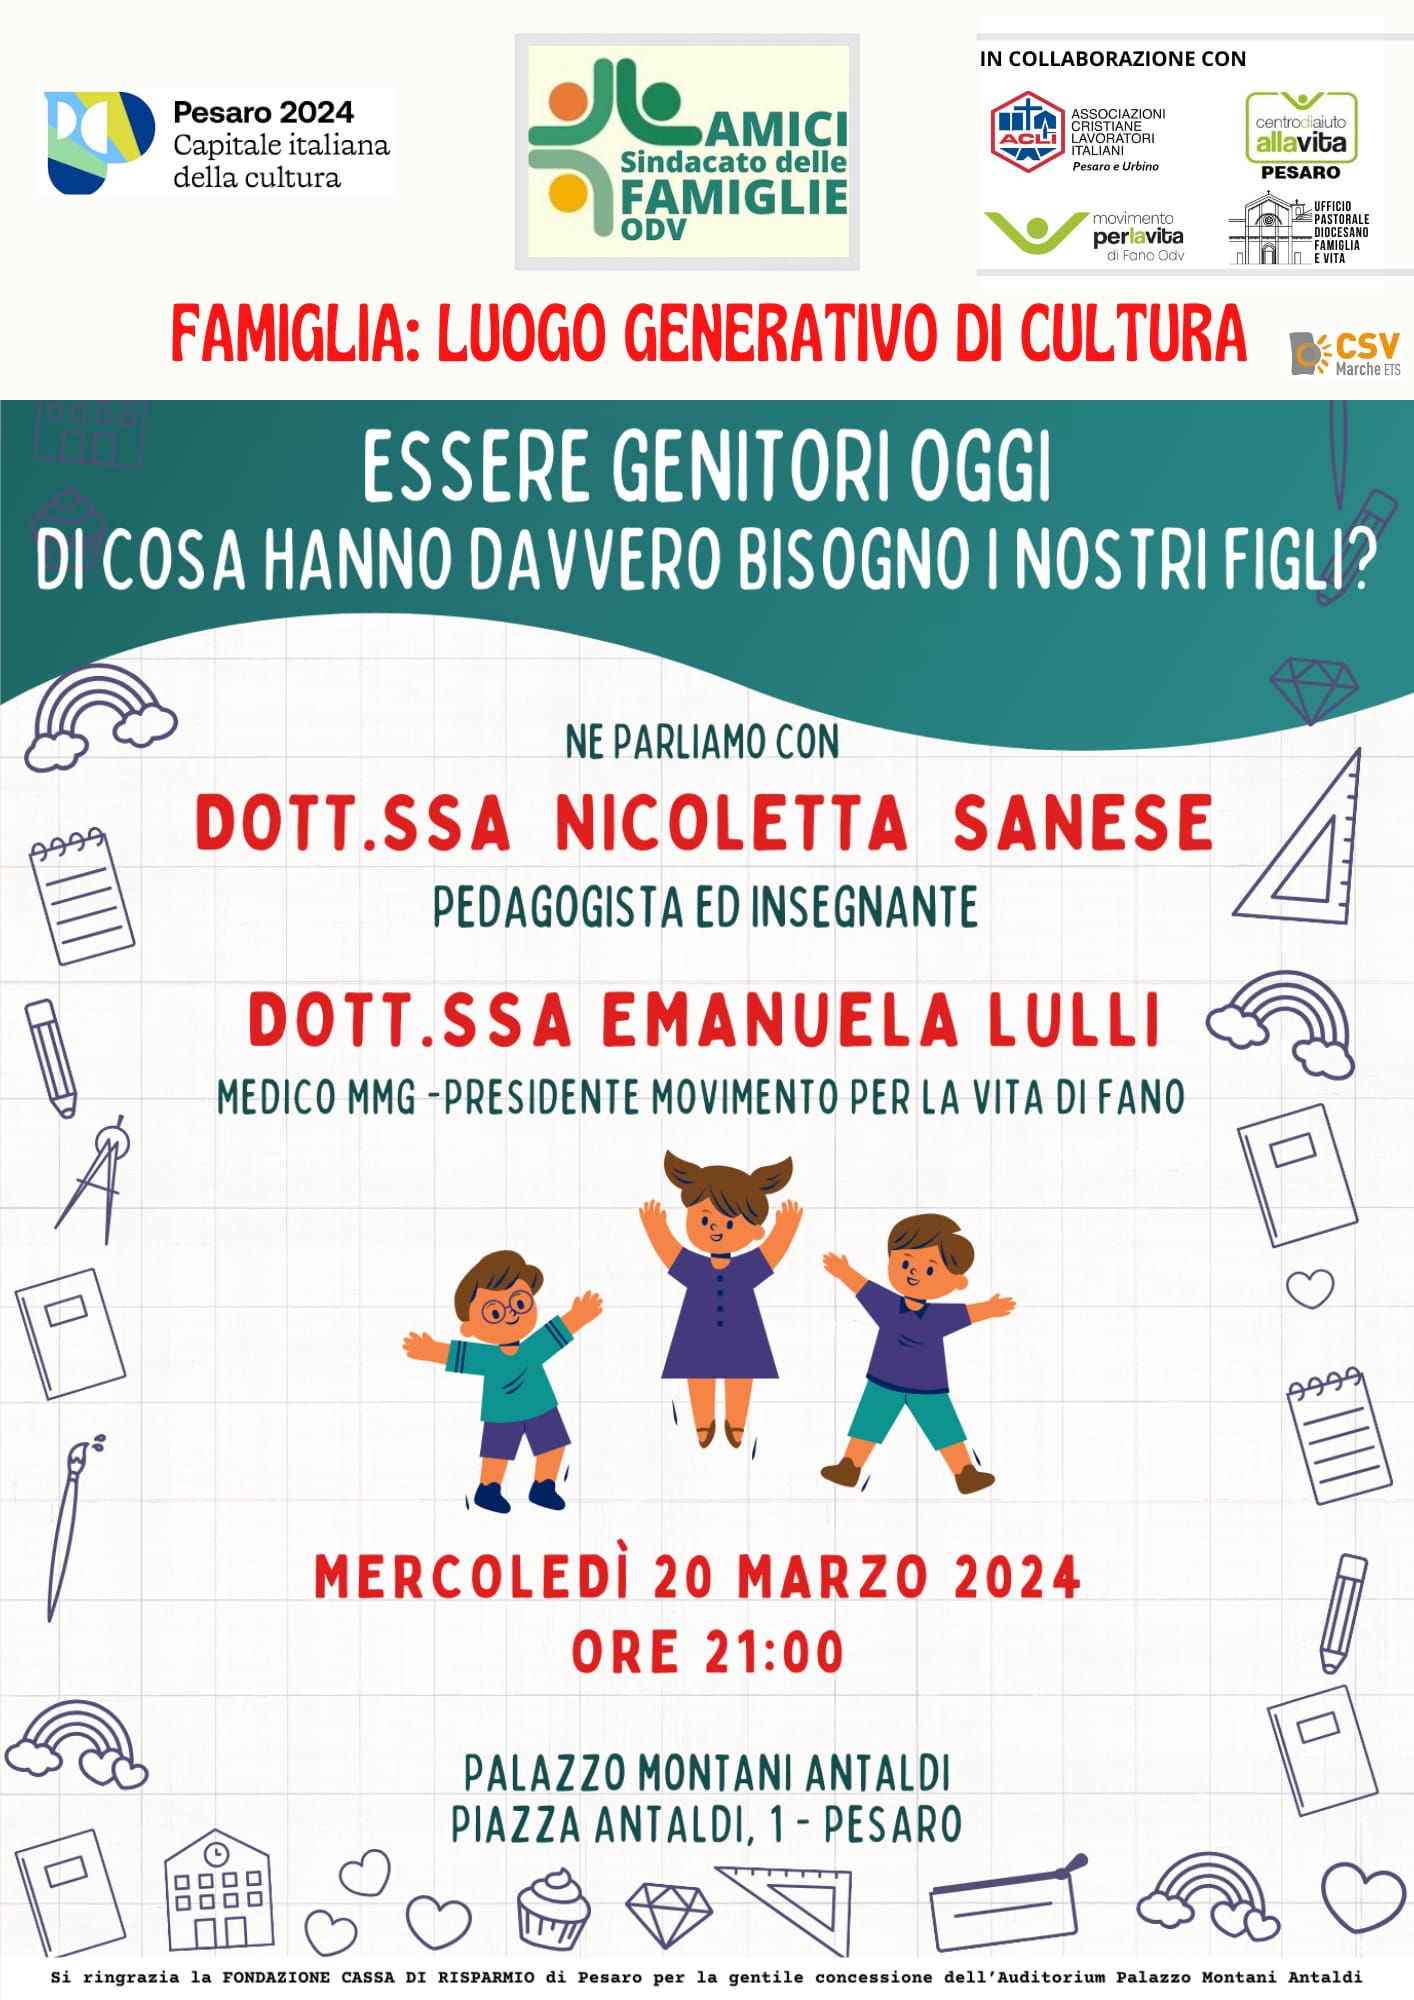 AMICI SINDACATO DELLE FAMIGLIE – Essere genitori oggi – Palazzo Antaldi – 20 marzo 2024, ore 21.00